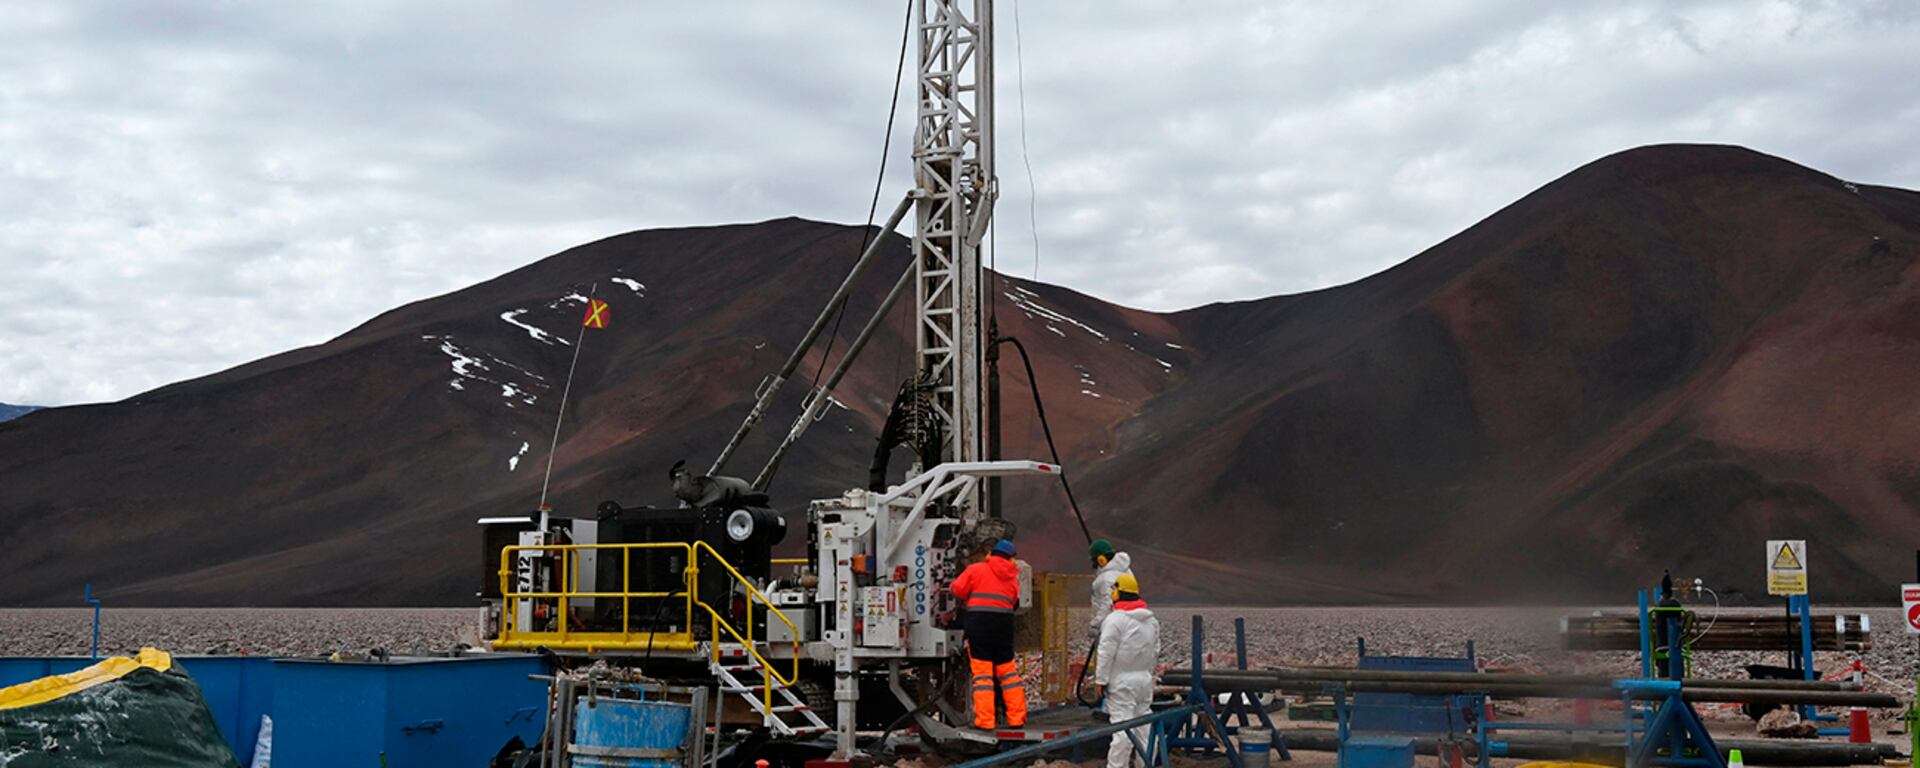 La guerra por el litio: Chile acelera su producción en férrea competencia con Australia y otros países de la región